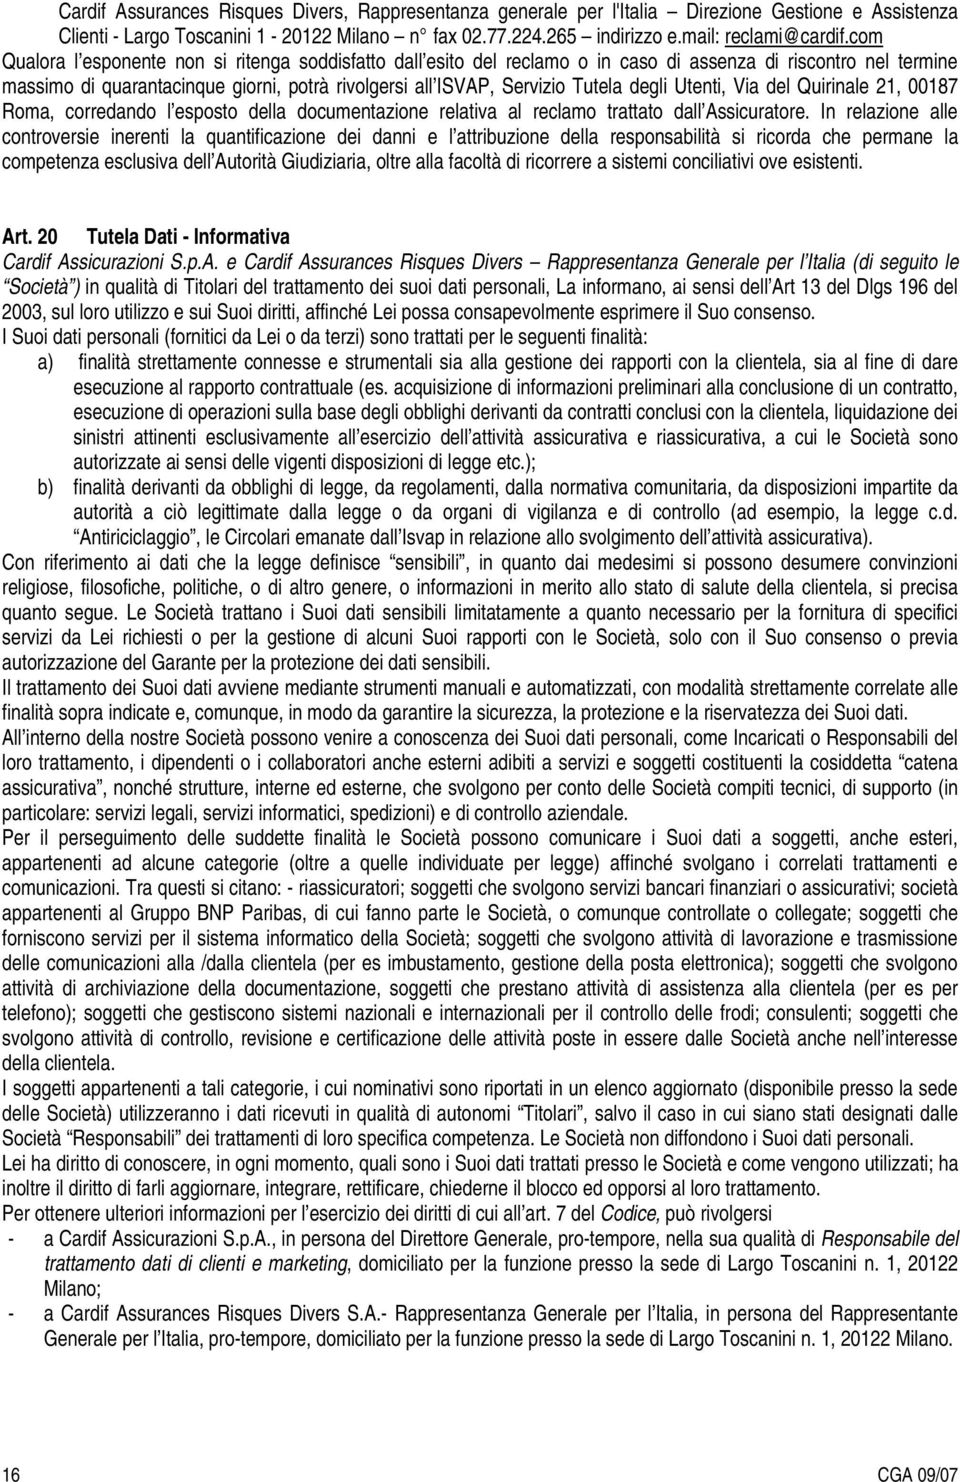 degli Utenti, Via del Quirinale 21, 00187 Roma, corredando l esposto della documentazione relativa al reclamo trattato dall Assicuratore.